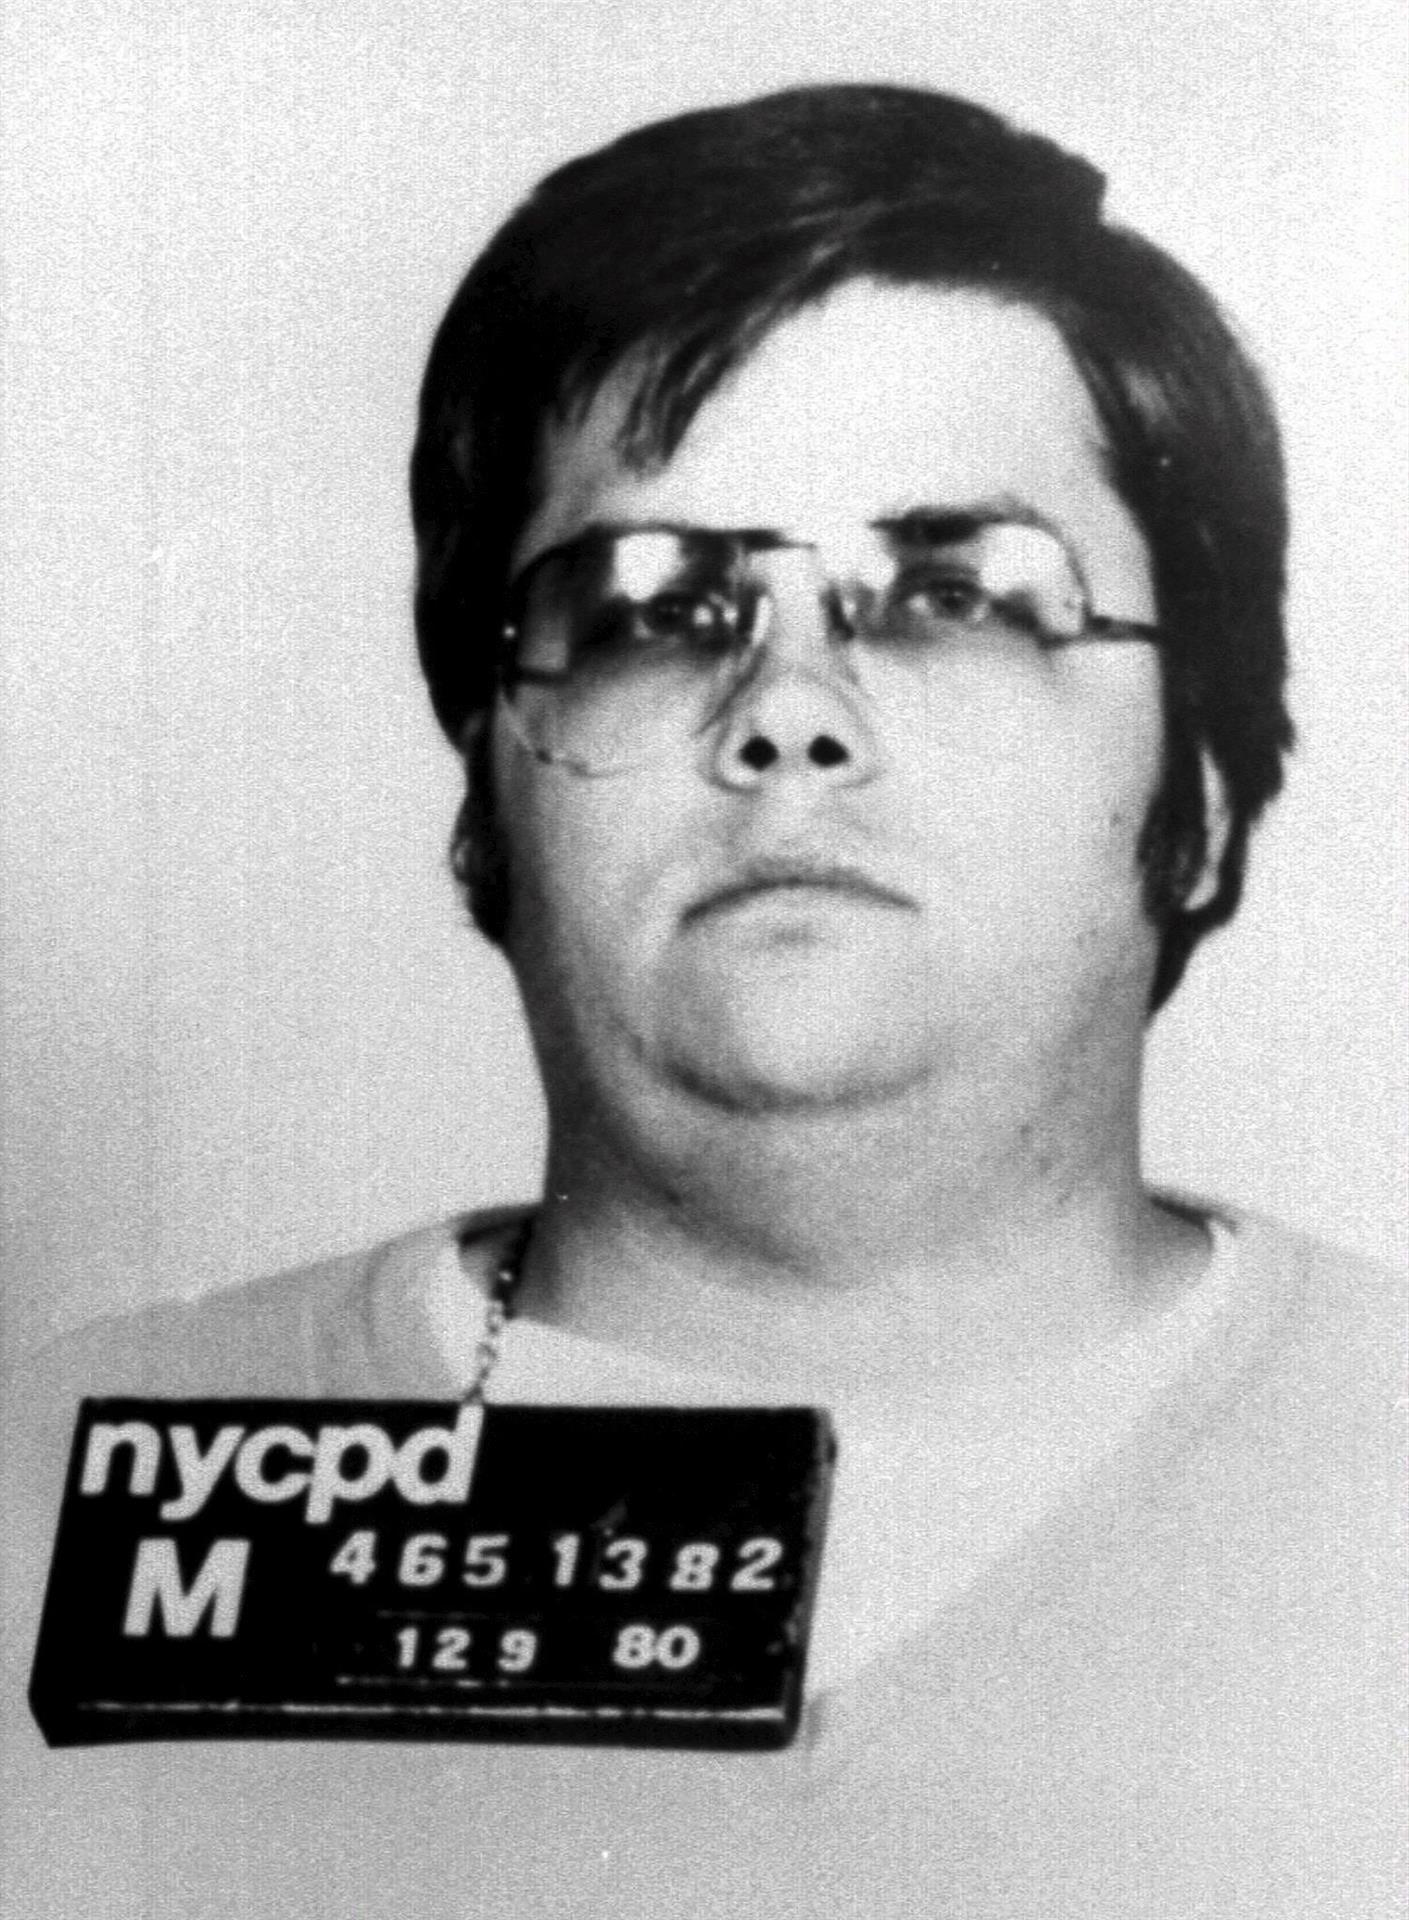 Fotografía de archivo cedida por la policía de Nueva York el 9 de diciembre de 1980, en la que aparece Mark David Chapman, asesino del ex Beatle, John Lennon. EFE/NYCPD/CORTESÍA/PROHIBIDO SU USO EN EL REINO UNIDO E IRLANDA/SOLO USO EDITORIAL
